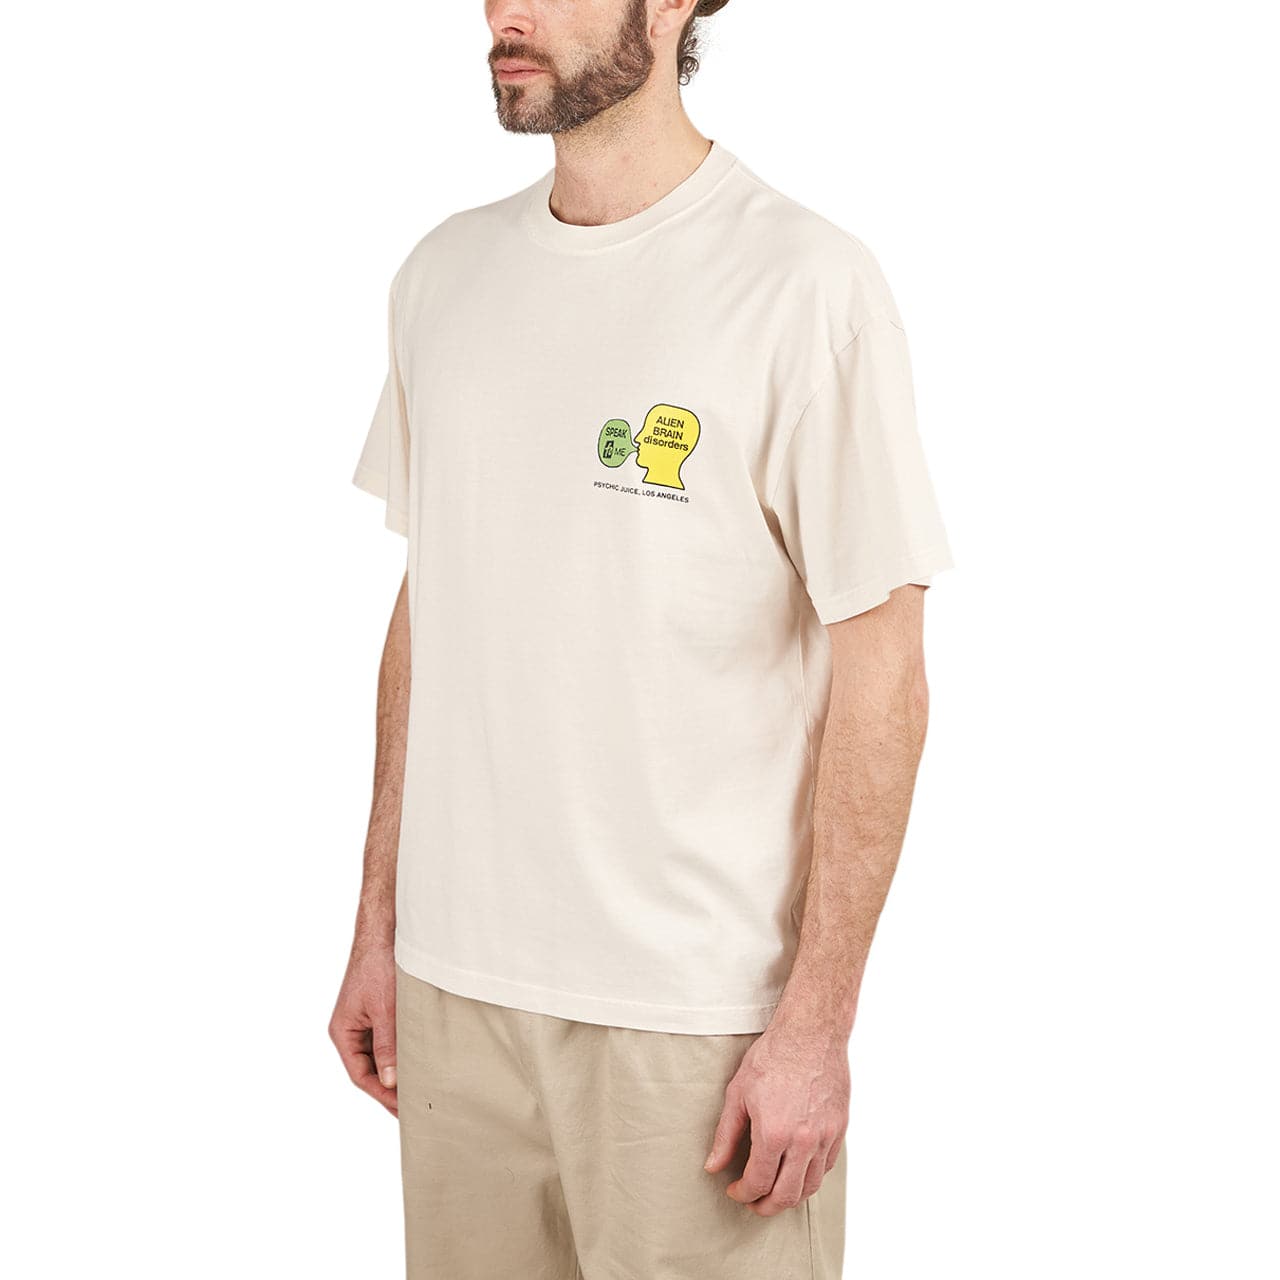 Brain Dead Psychic Juice T-Shirt (Beige)  - Allike Store